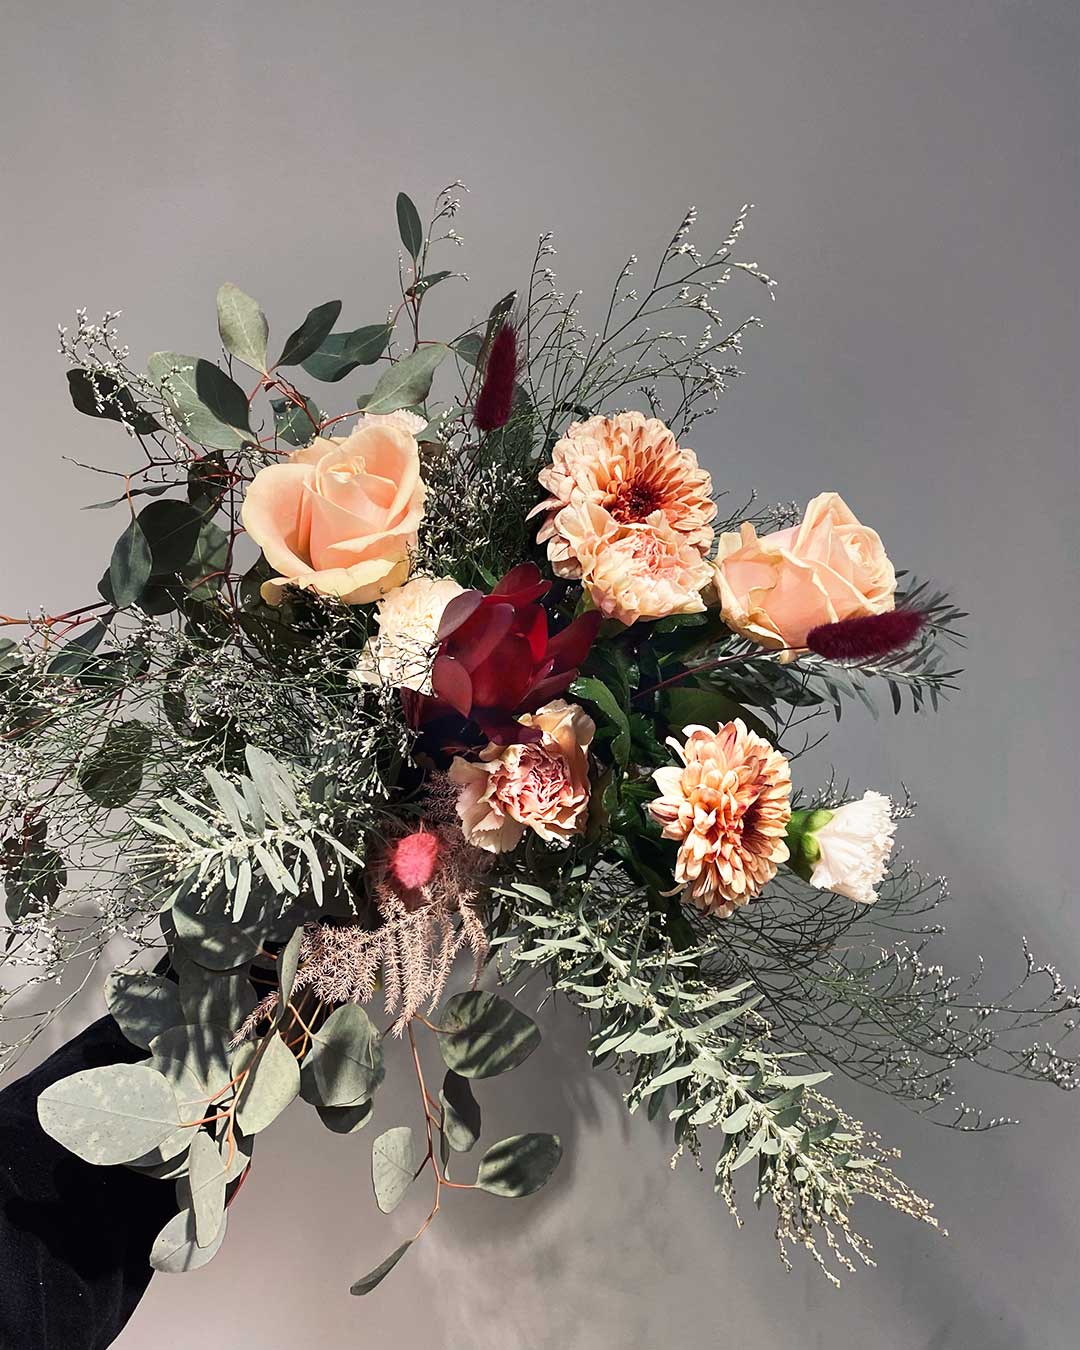 Blombud innehållandes krysantemum och rosor och nejlikor